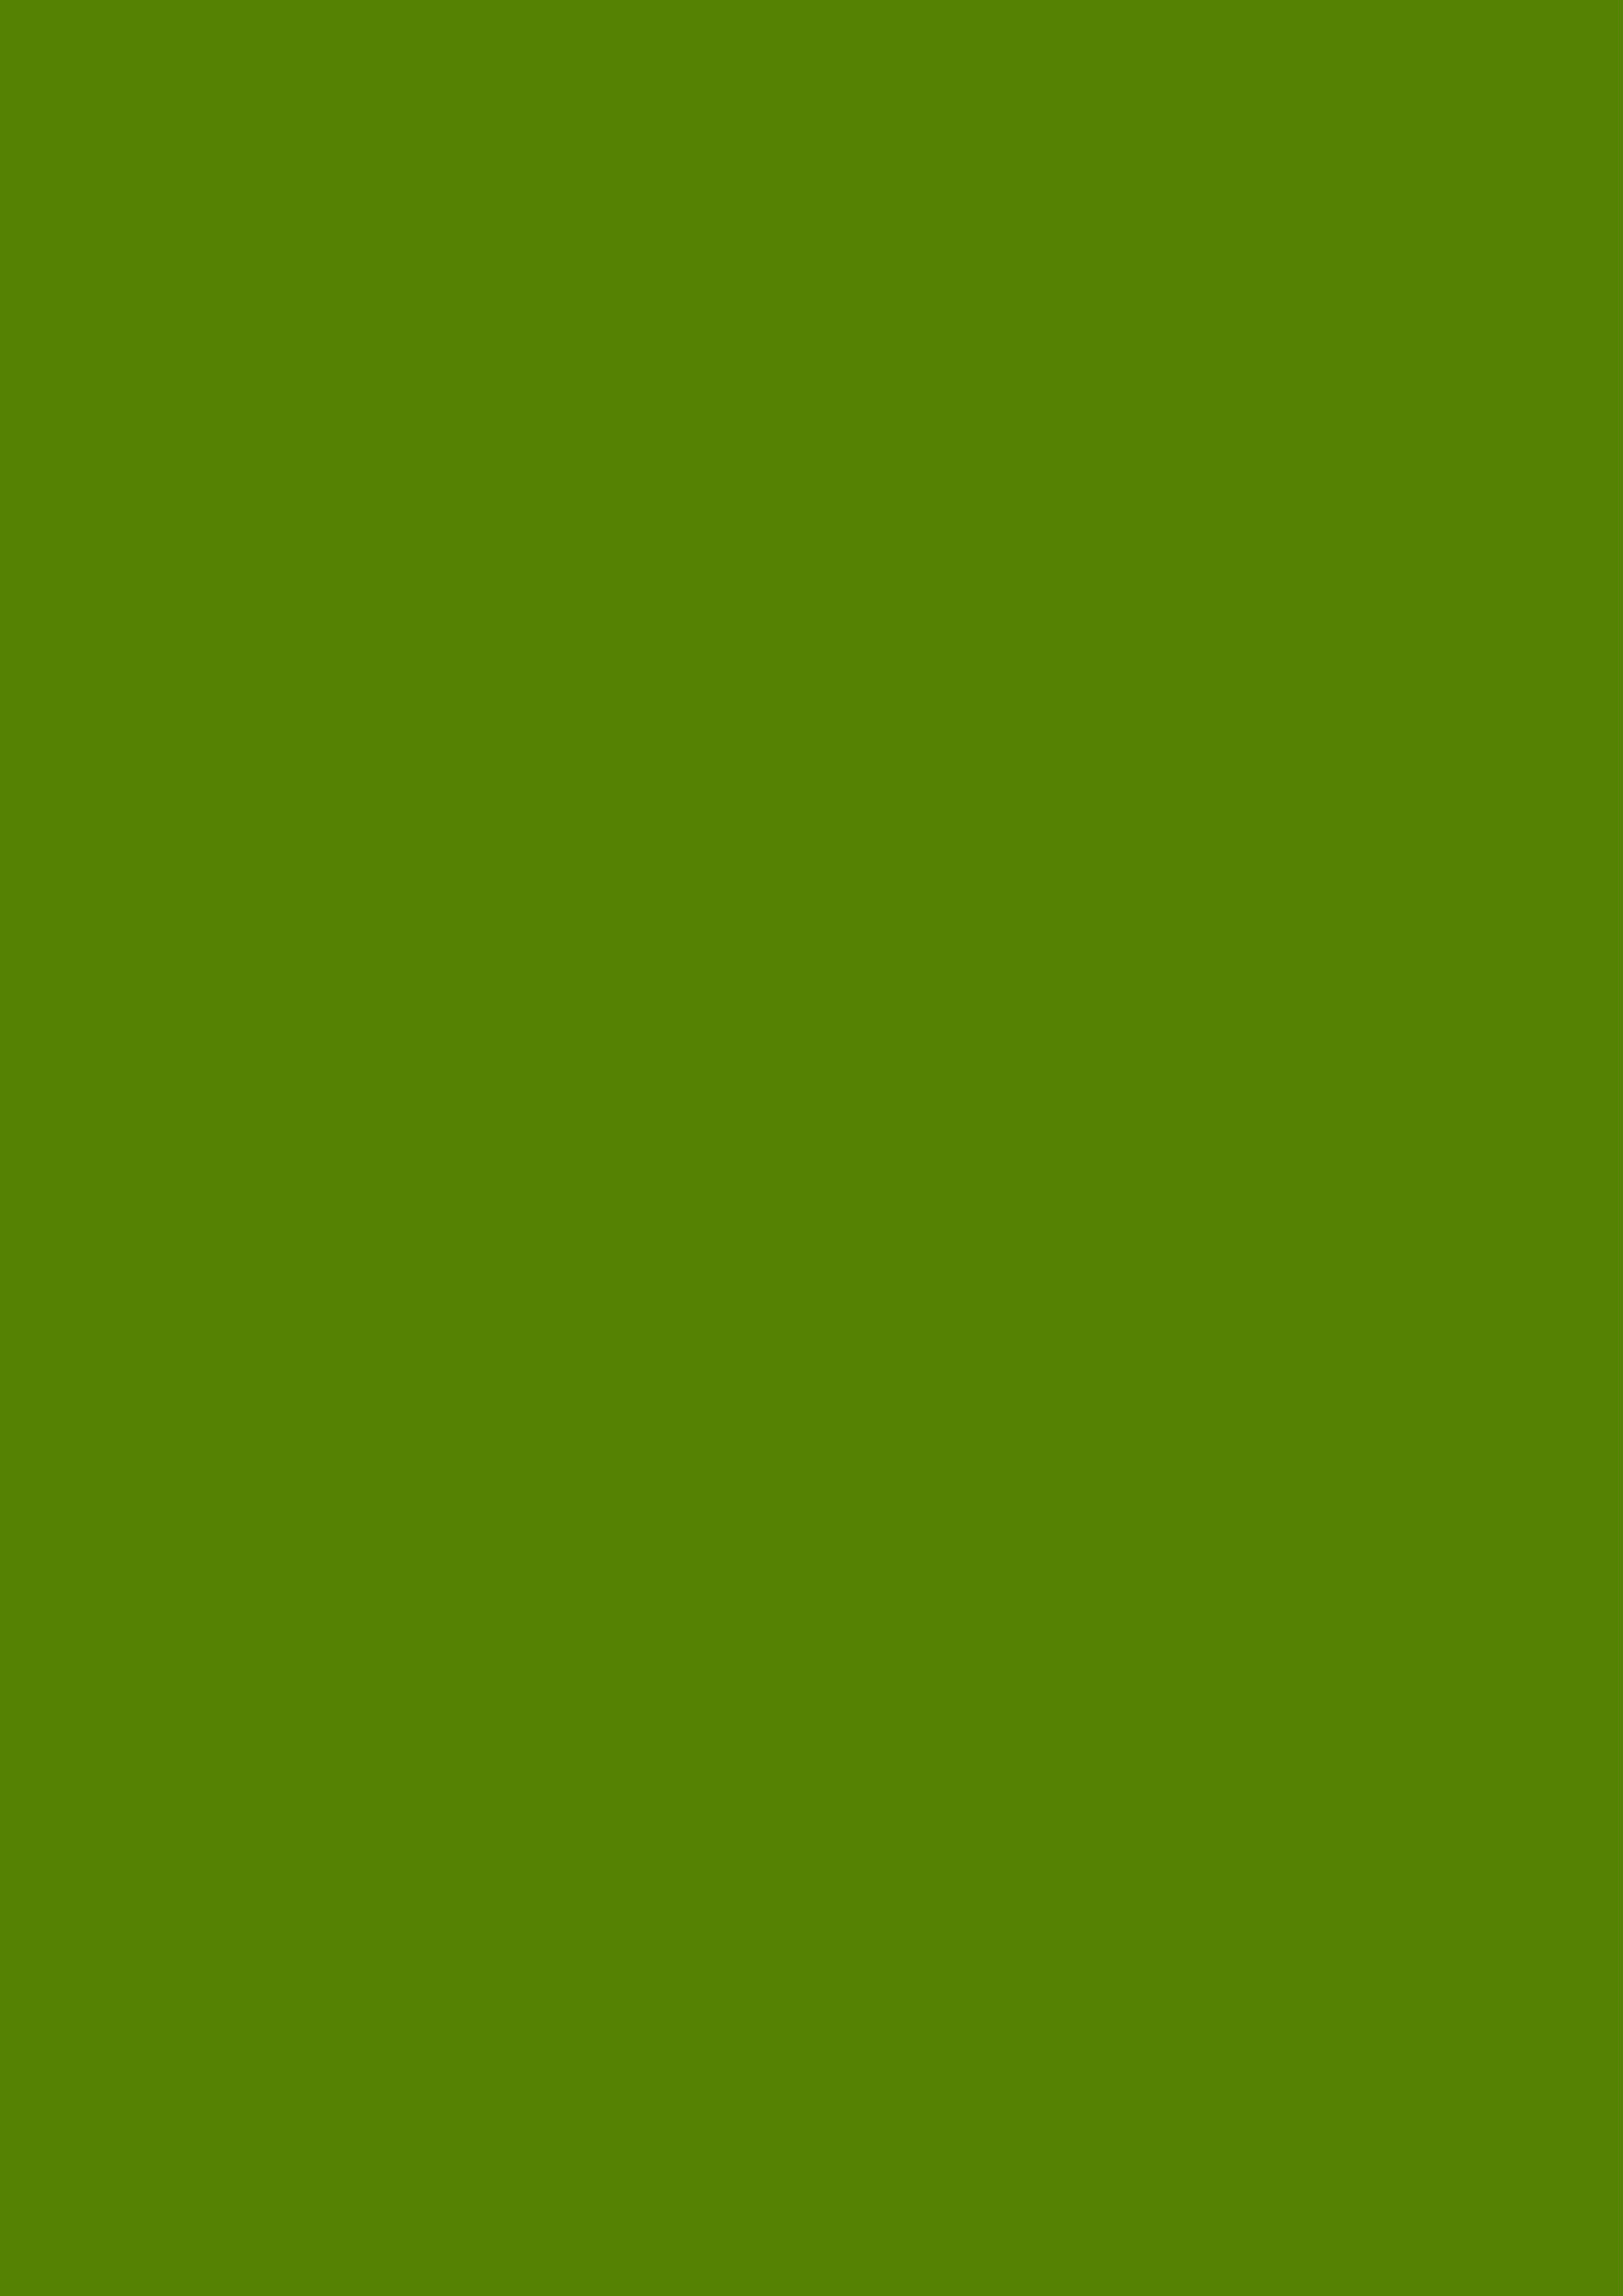 2480x3508 Avocado Solid Color Background